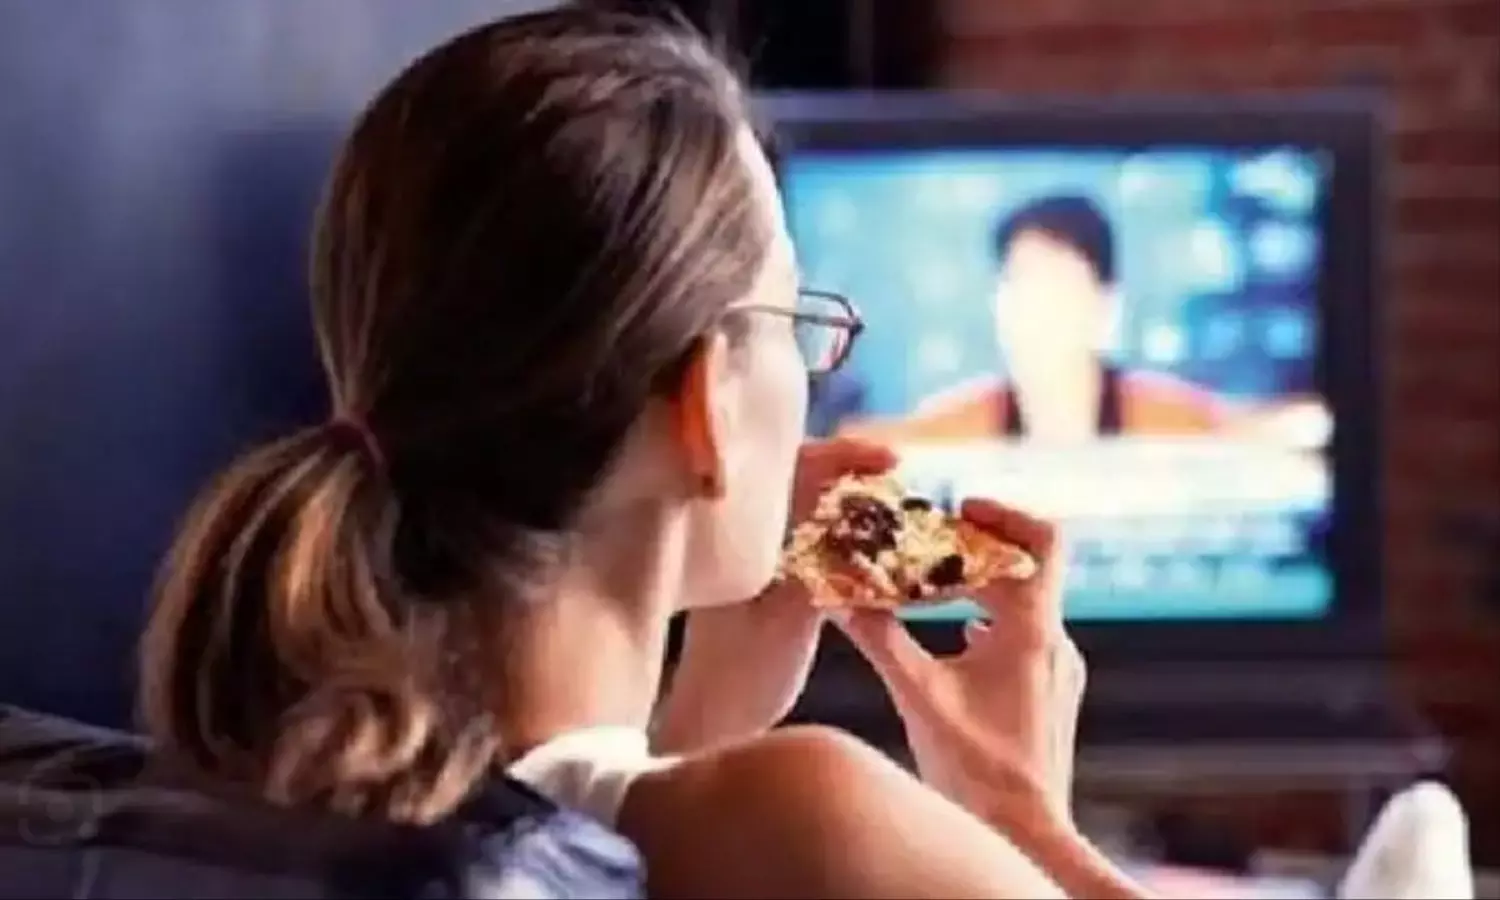 Television While Eating: अगर आप भी खाना खाते समय देखते हैं टीवी तो हो जाएं सावधान, सेहत के लिए है खतरे की घंटी